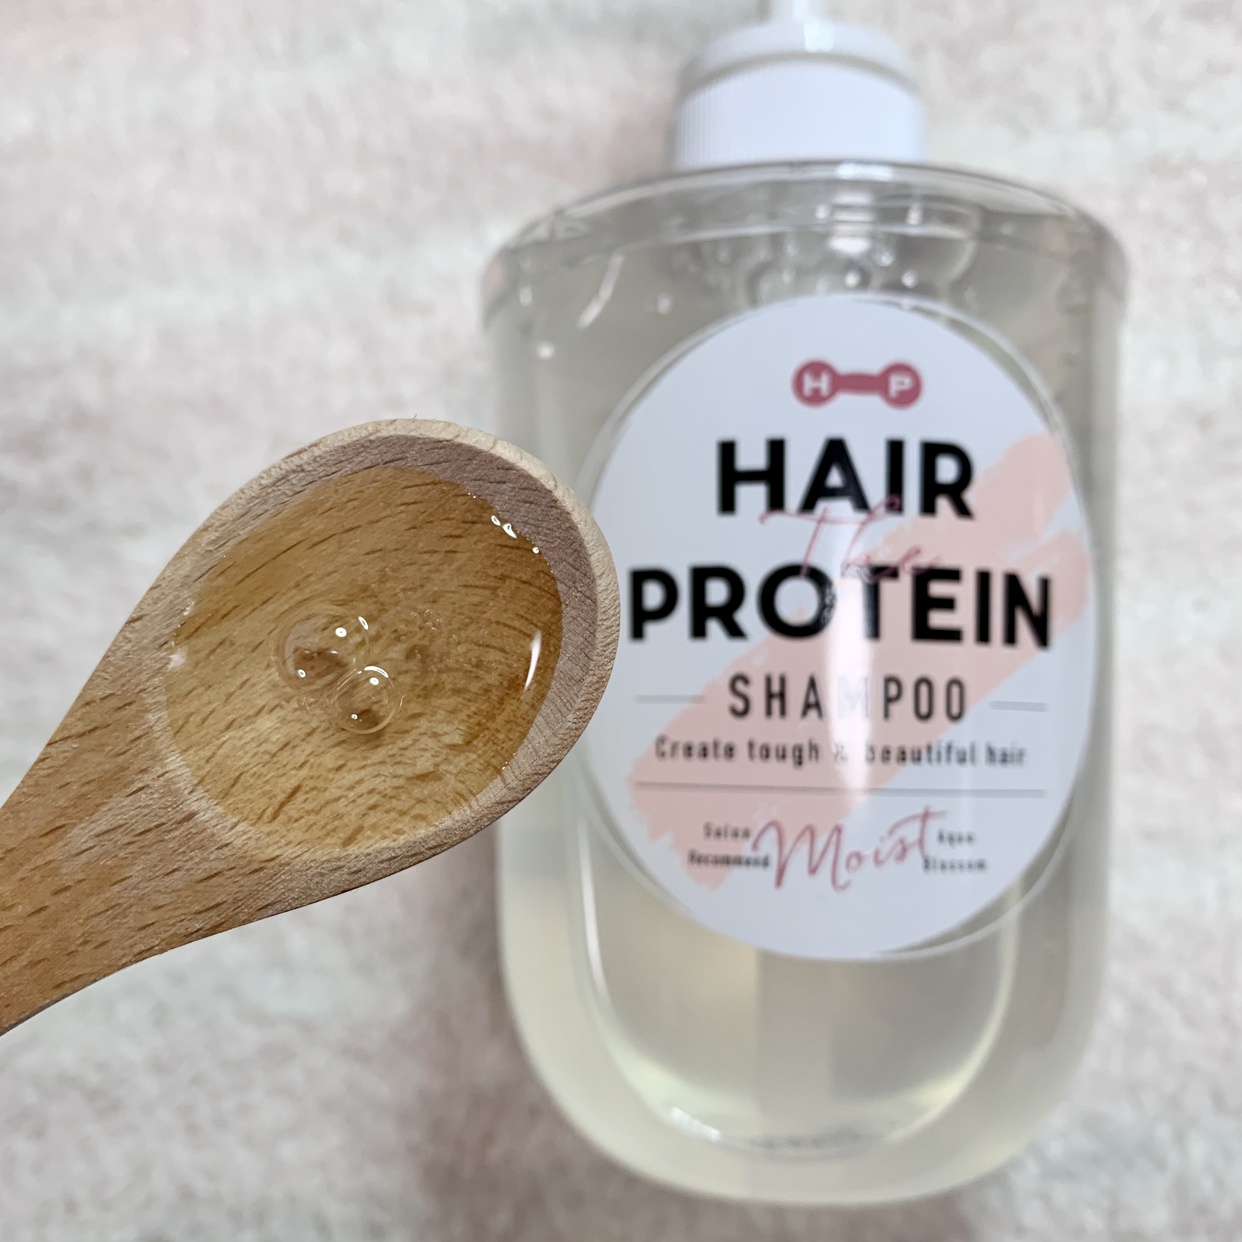 Hair The Protein(ヘアザプロテイン) モイスト シャンプーを使ったうりむー姉さんさんのクチコミ画像1